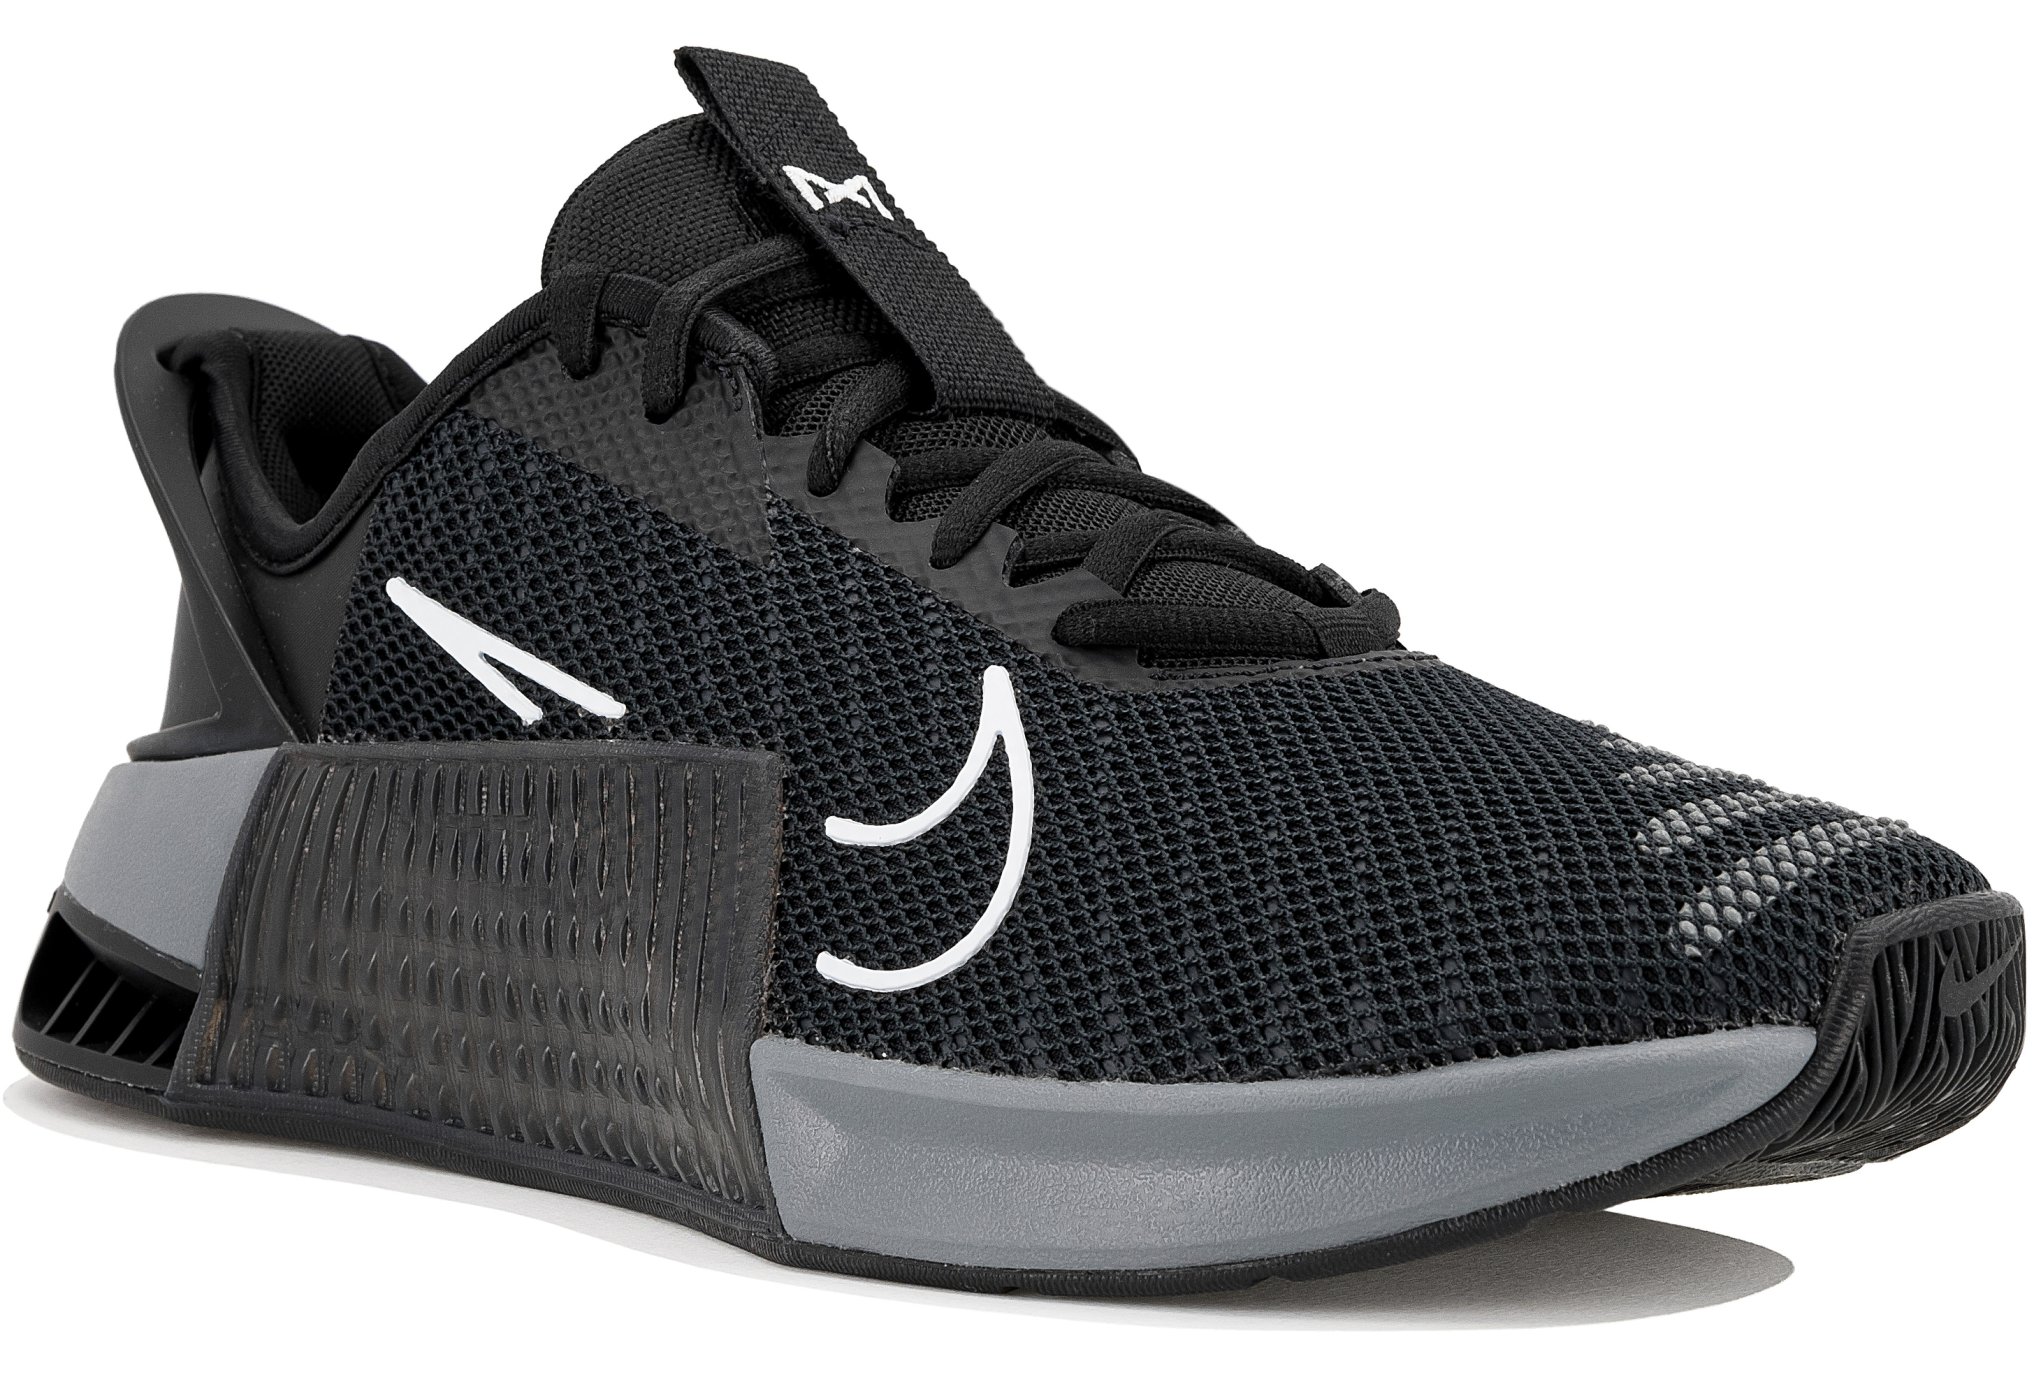 Soldes Nike : Jusqu'à -50% sur une sélection de chaussures running